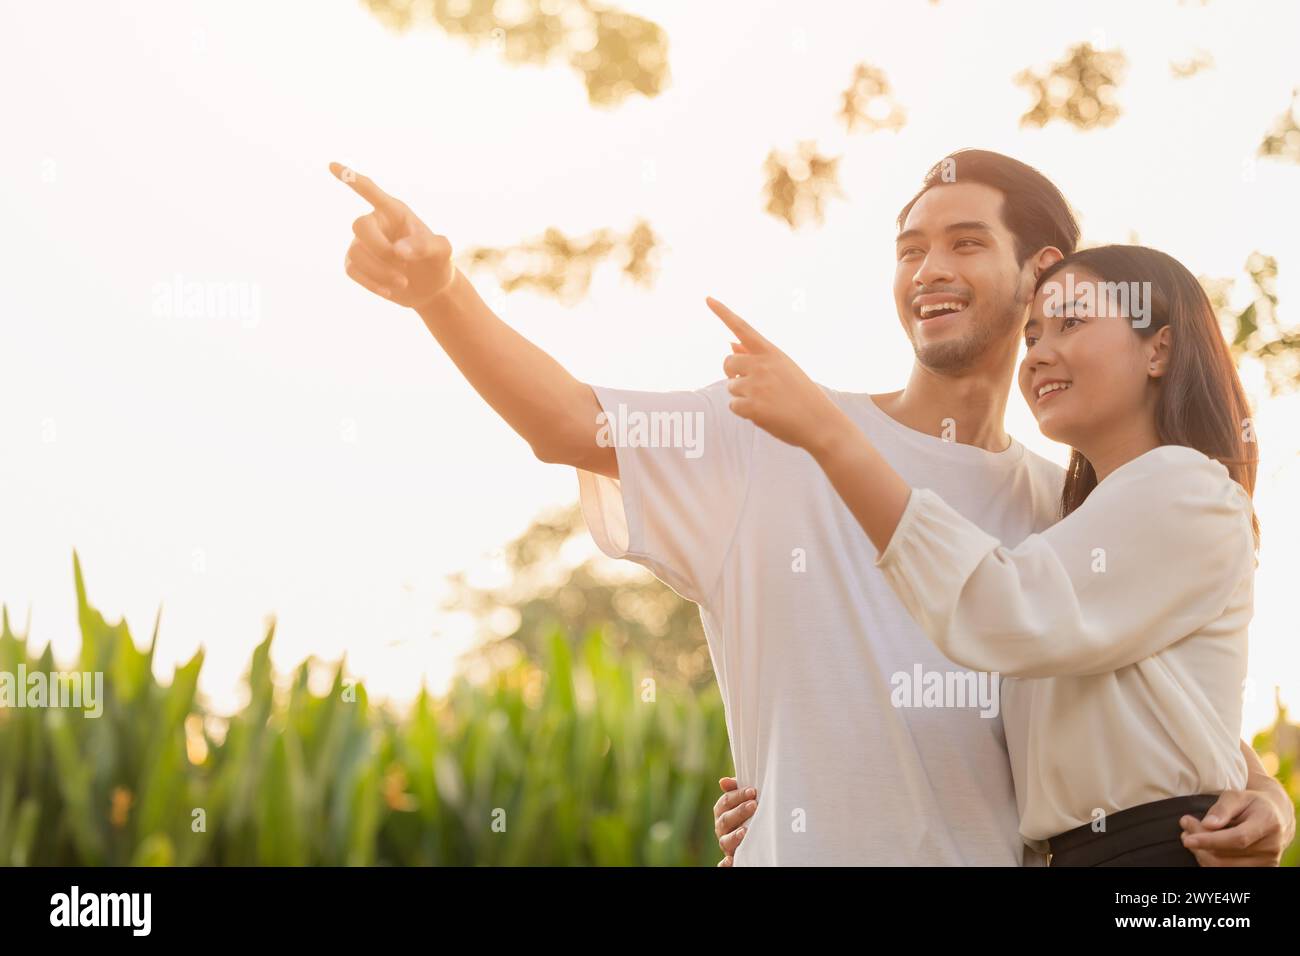 Zwei Teenager stehen glücklich lächelnd zusammen Park im Freien, sonnenstrahlende Hand, die hoch zeigt für Lebensplanung zukünftige Versicherungsvision Konzept Stockfoto